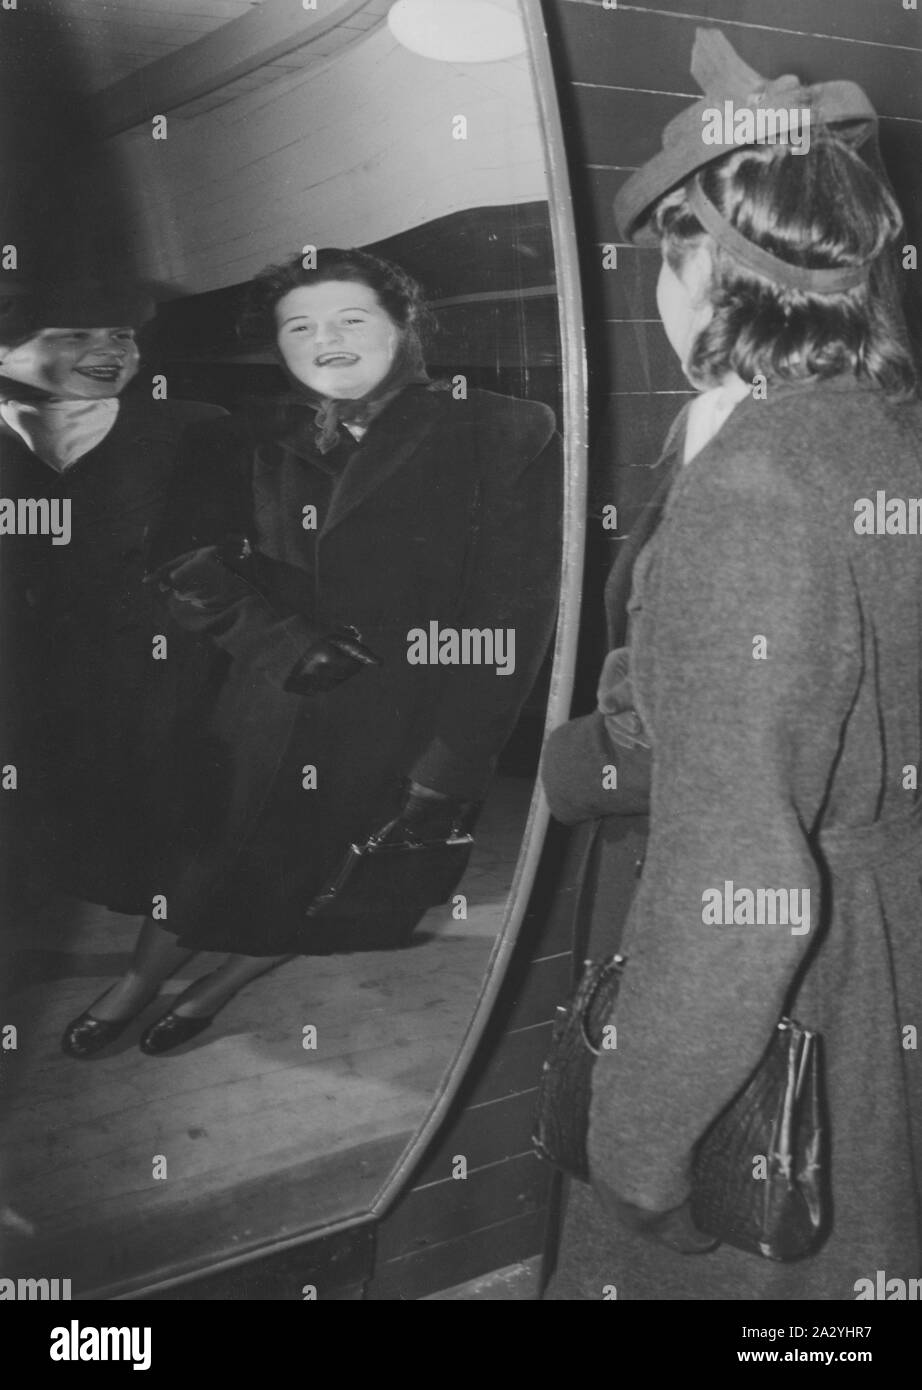 Parc de loisirs dans les années 40. Deux femmes rient de leur apparence dans un drôle de miroir. Miroirs de formes différentes rend la réflexion de personnes plus grandes et minces, ou courts et gras. Stockholm Gröna Lund Suède 1940 Banque D'Images